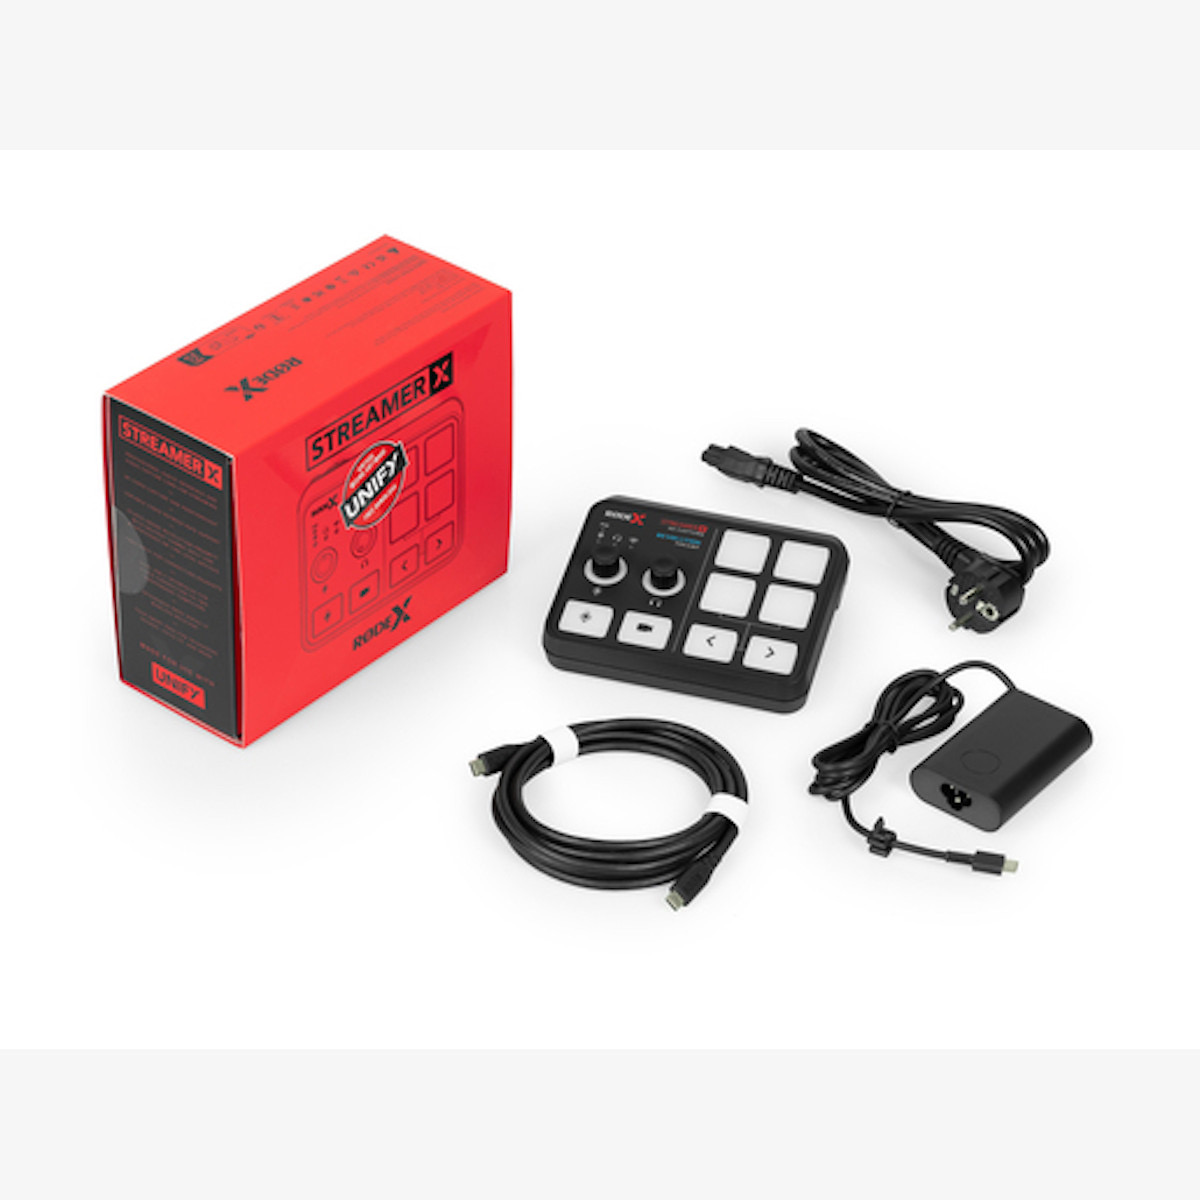 Rode Streamer X Audio Interface und Video Capture Card